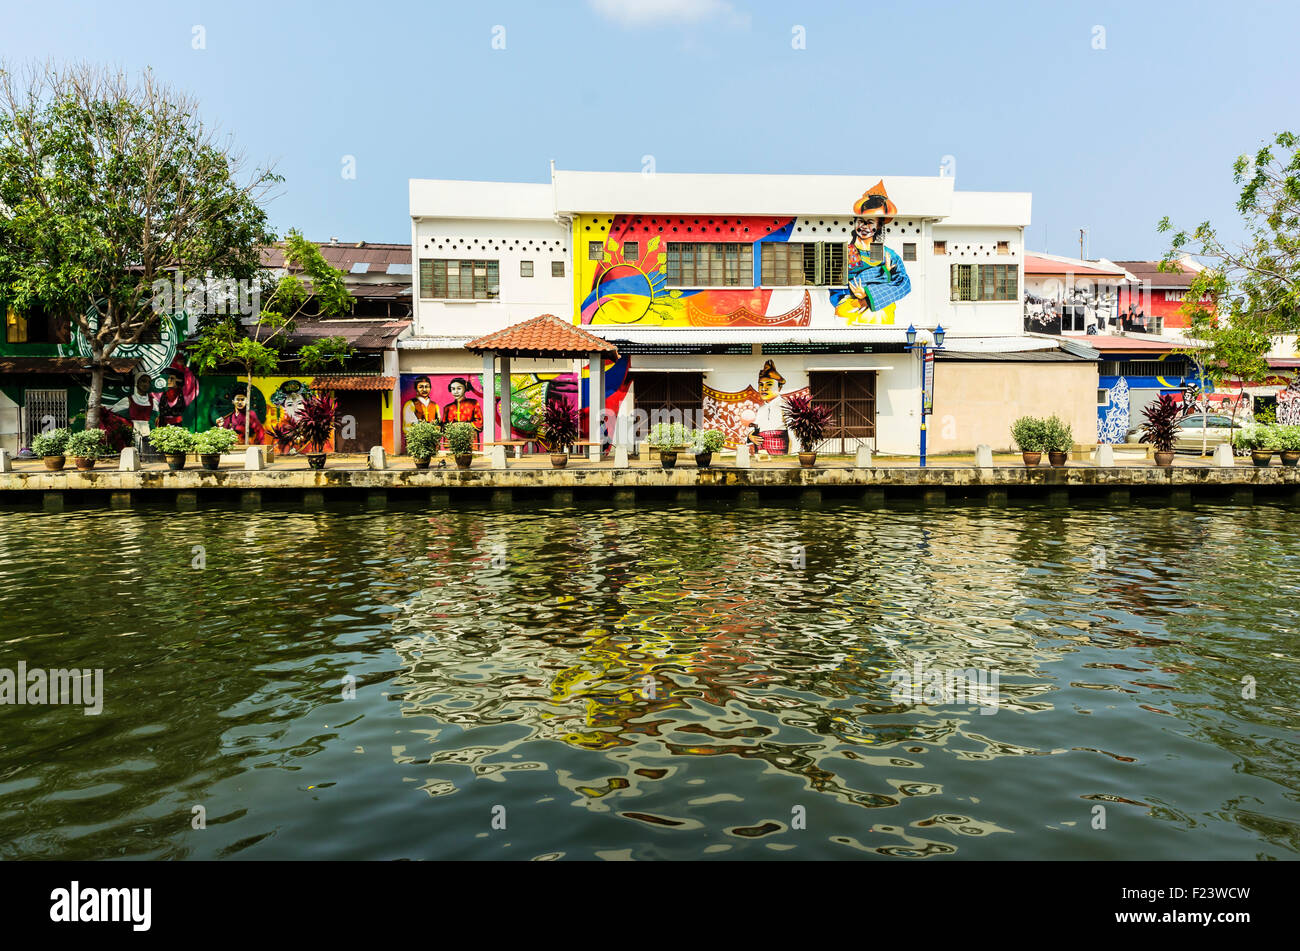 Façades peintes de couleurs vives le long de la rivière Malacca, district de Kampung Bakar Batu, Malacca, ou Melaka, Malaisie Banque D'Images